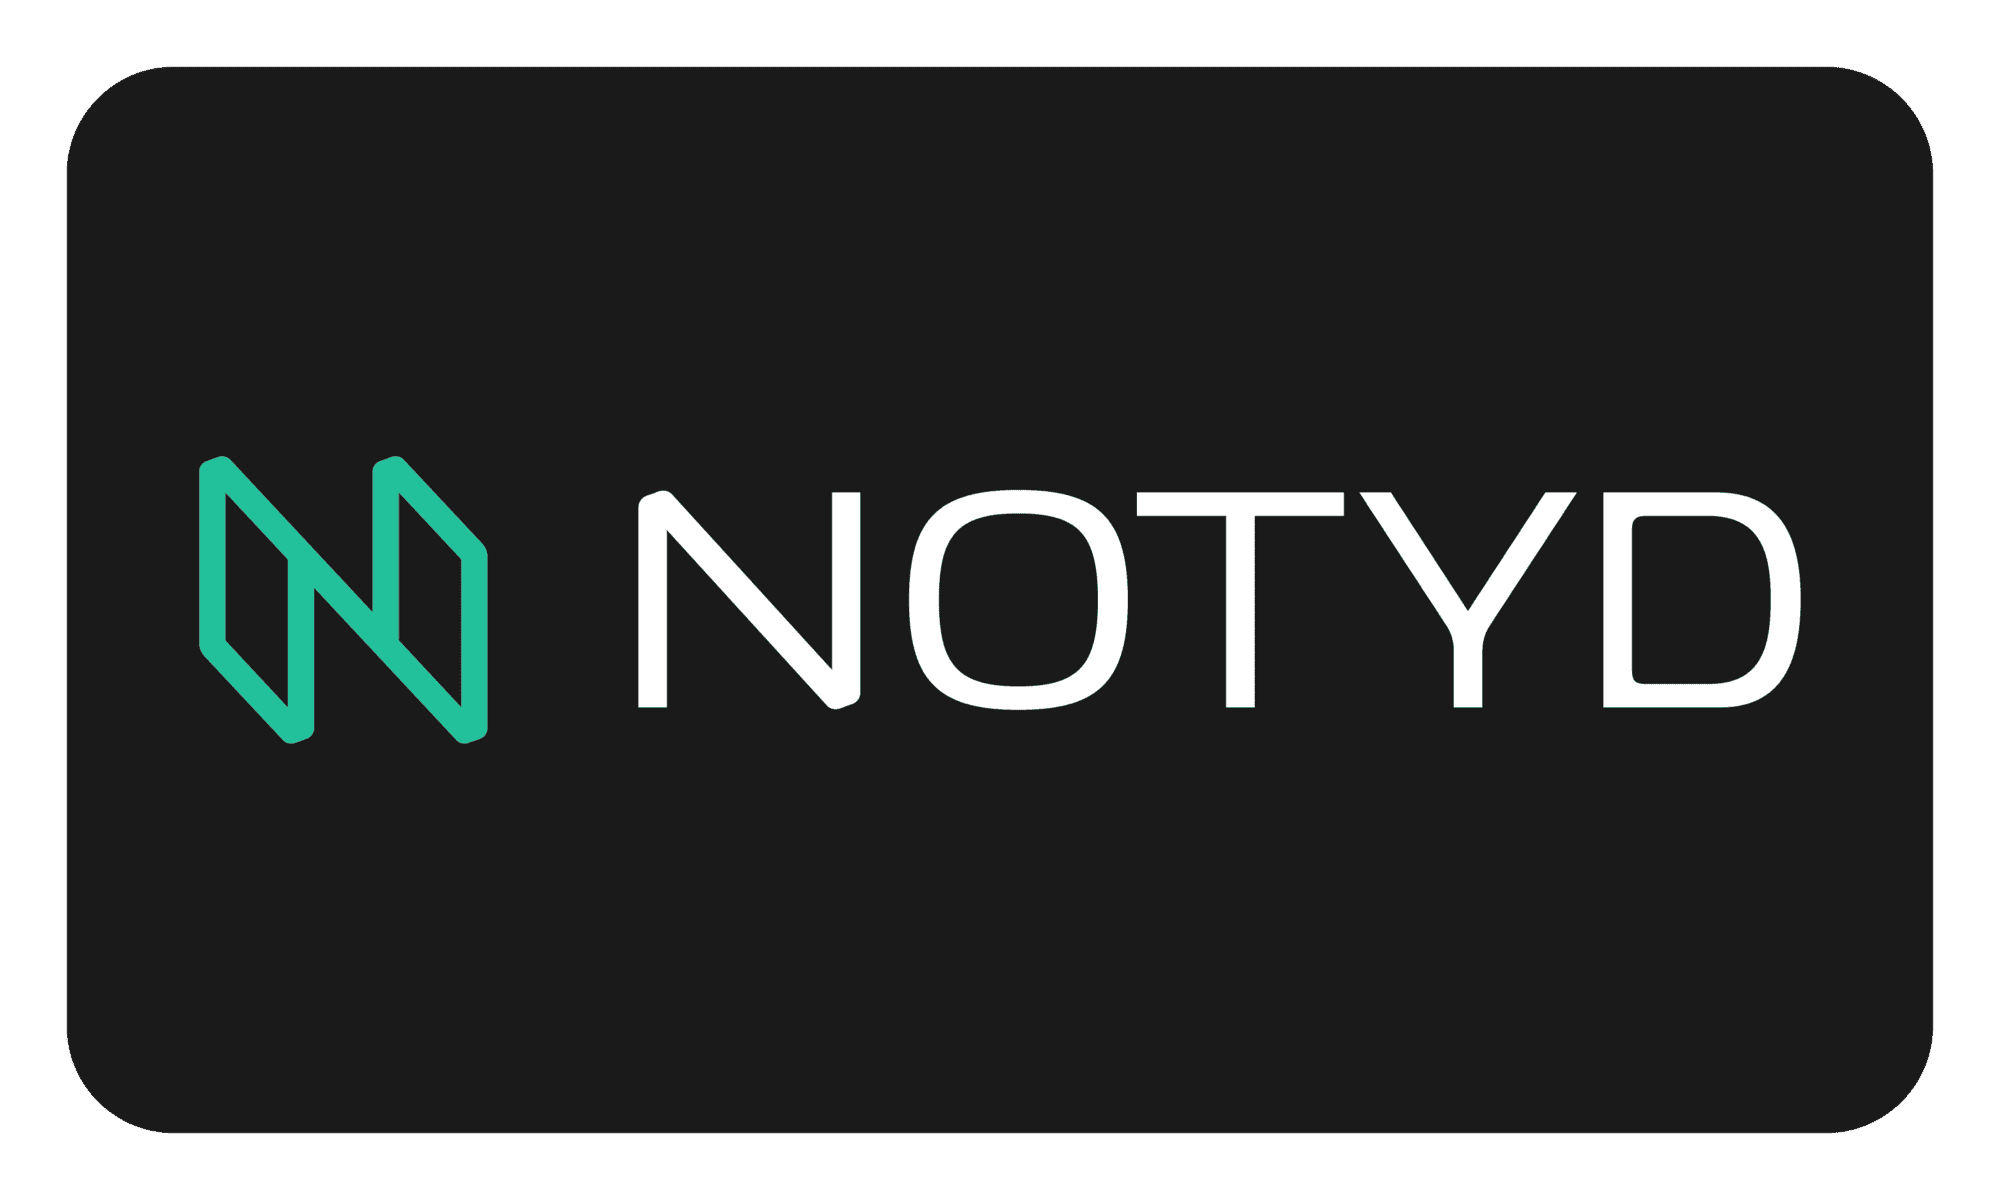 Notyd logo